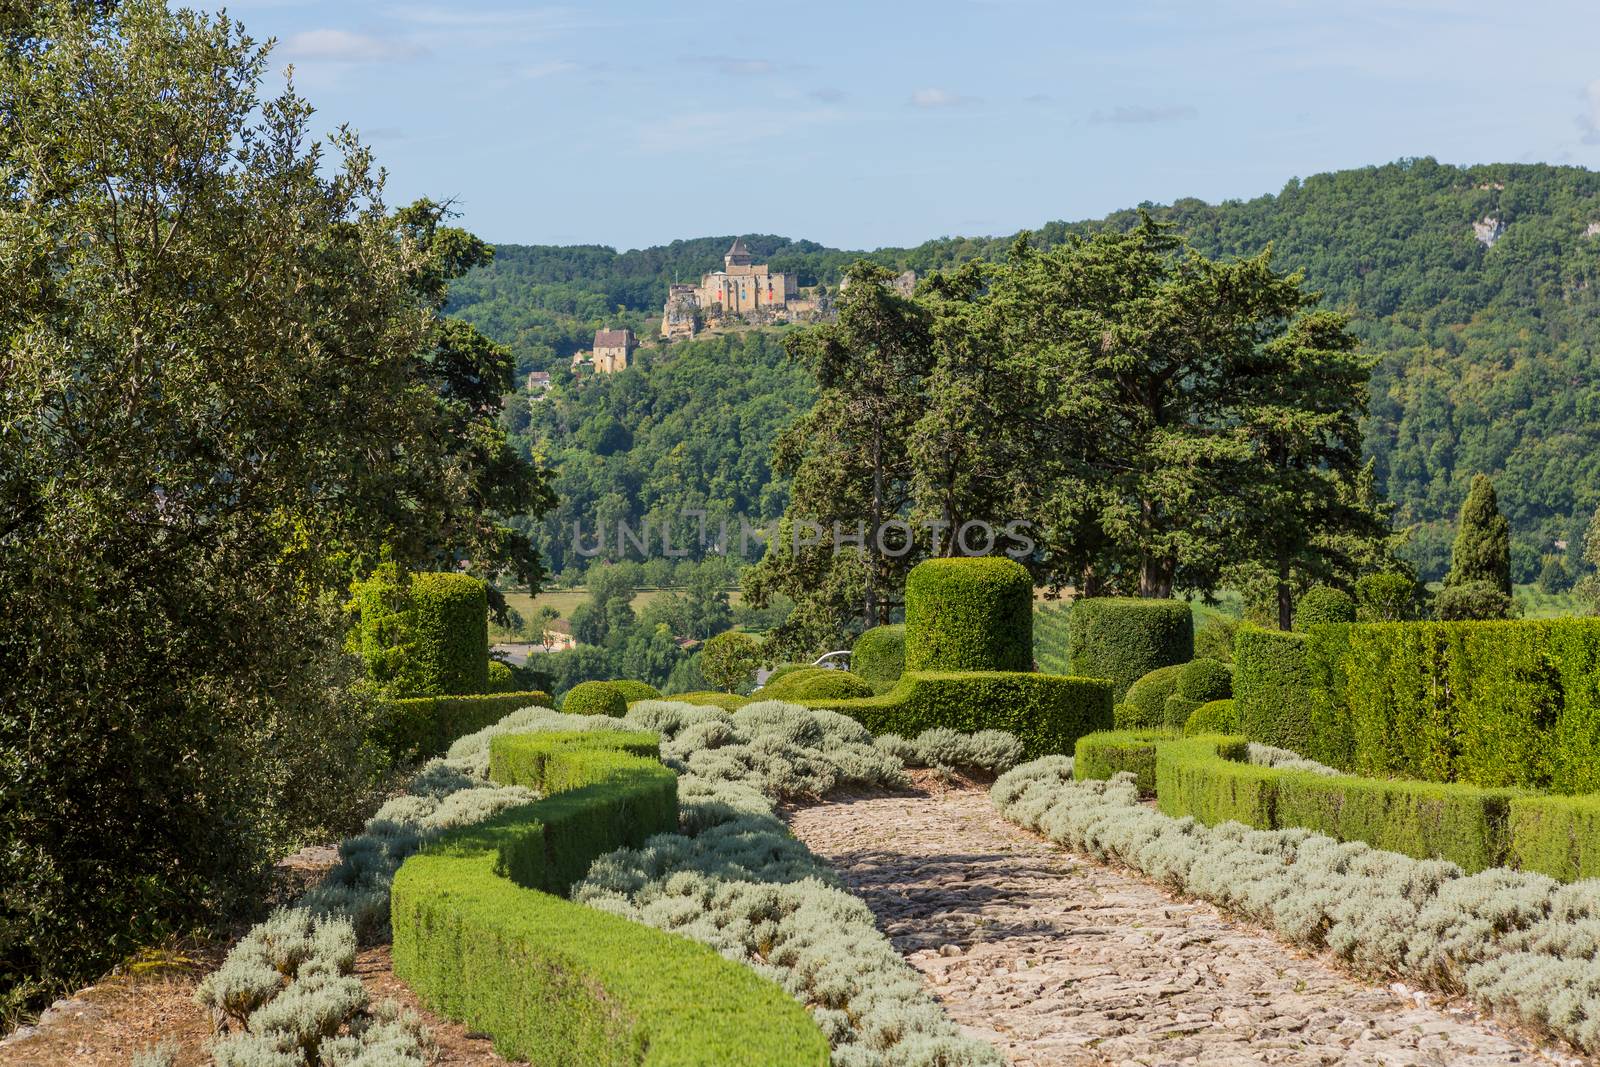 The Jardins de Marqueyssac by zittto